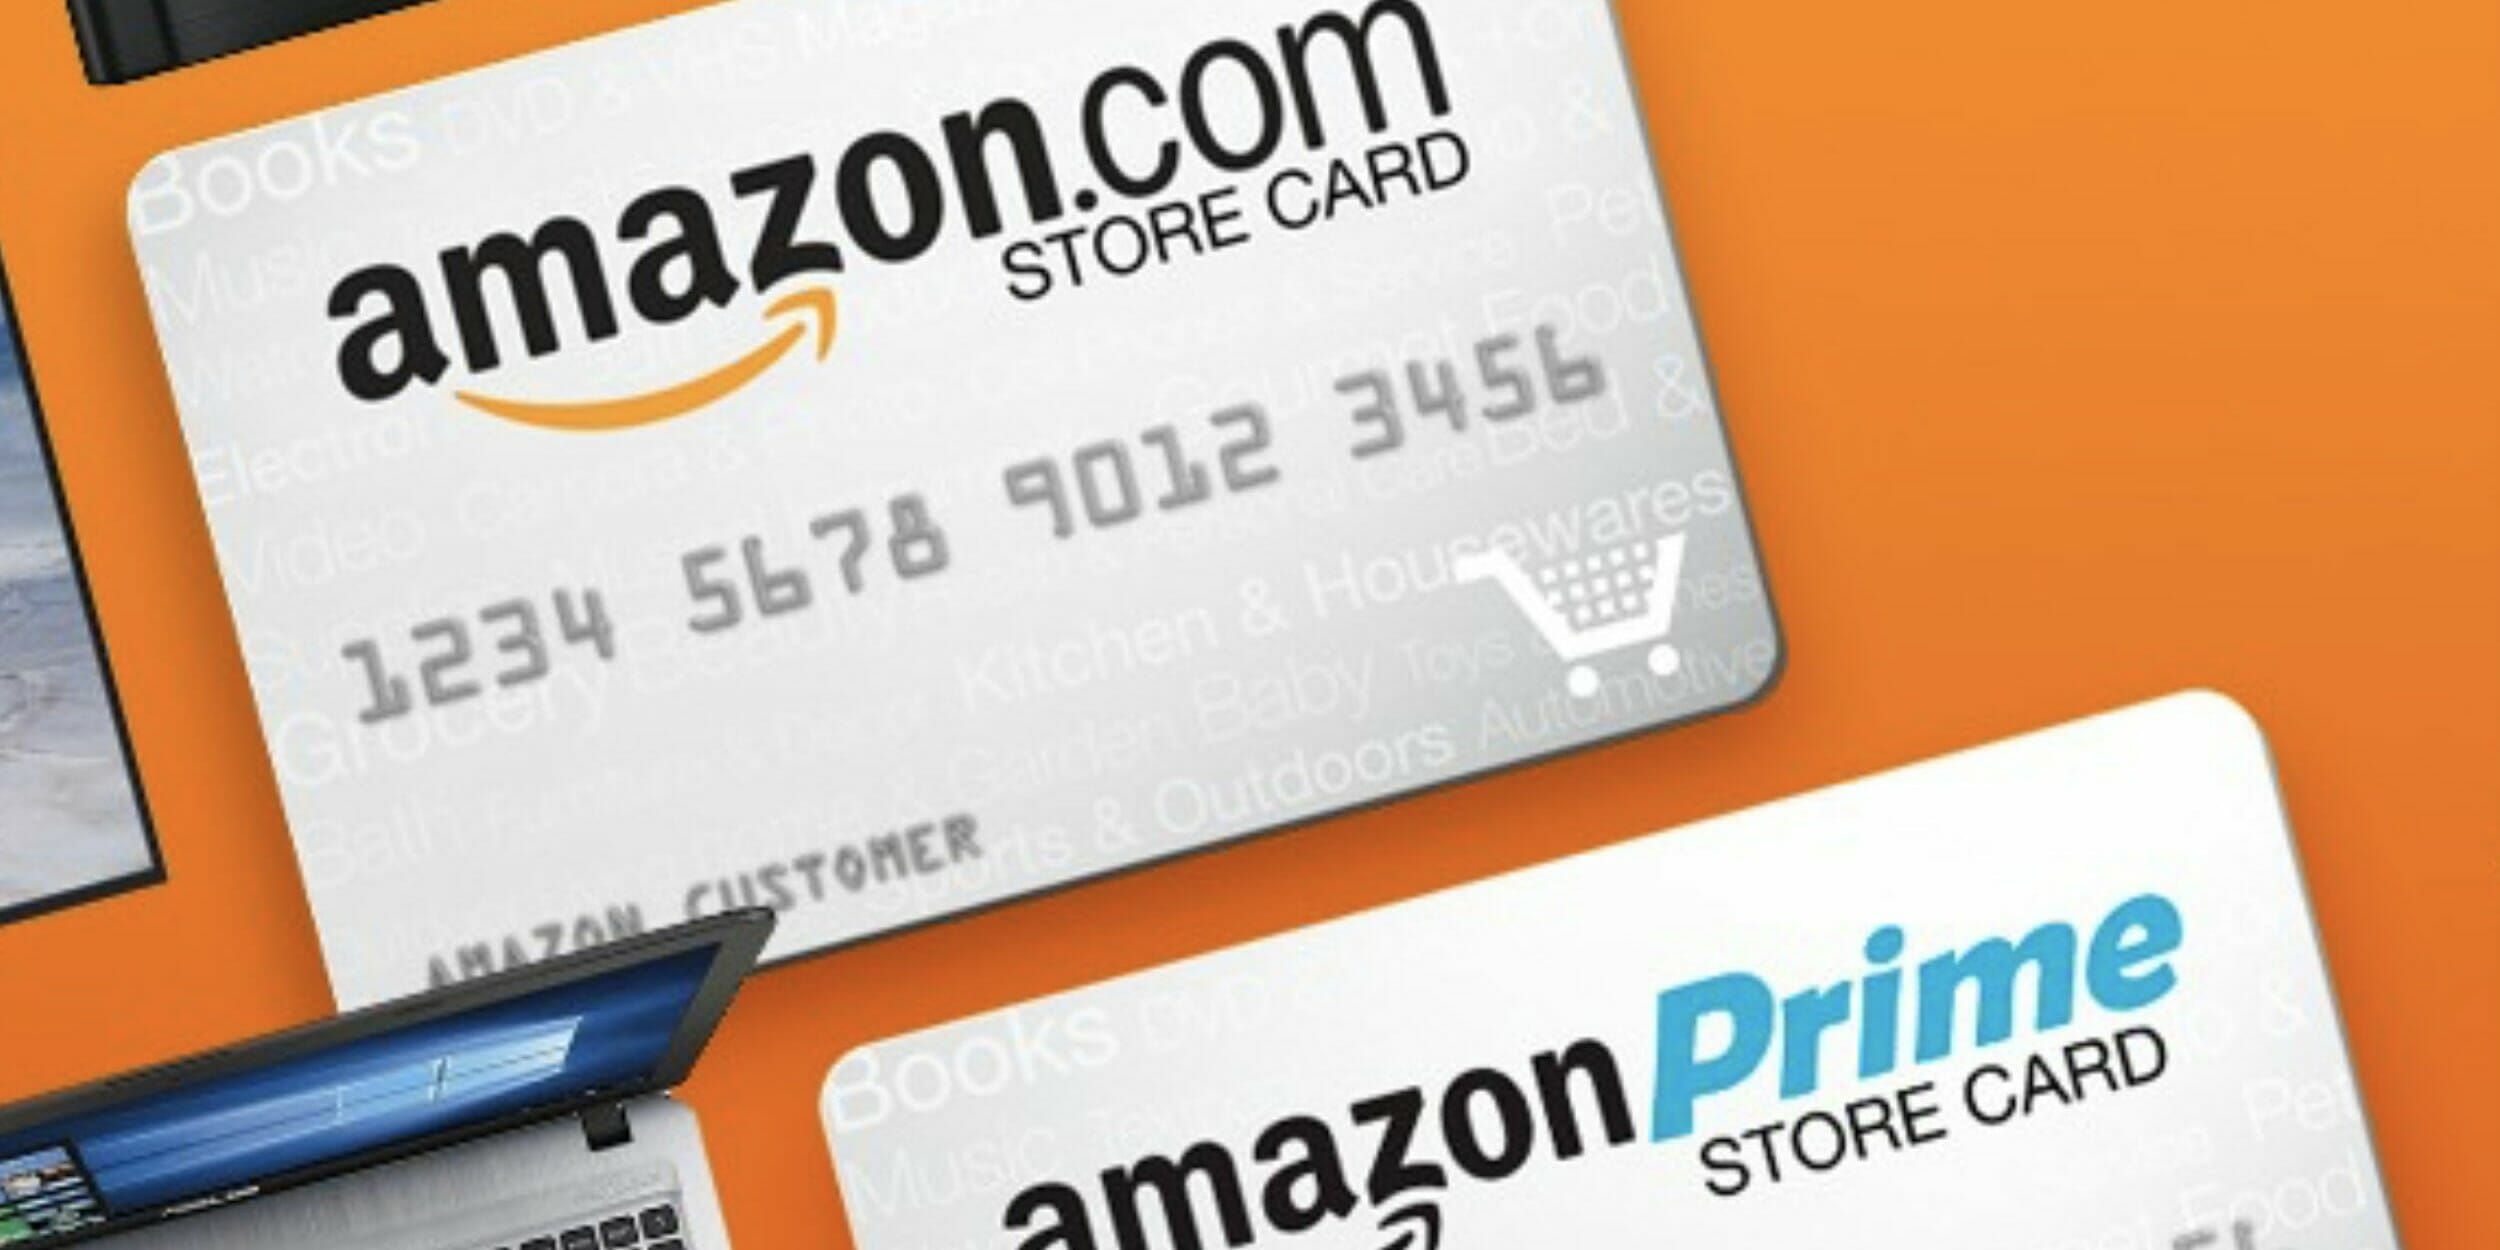 Teknoloji Haberleri 8 - 14 Haziran 2019 - Amazon Kredi Kartı